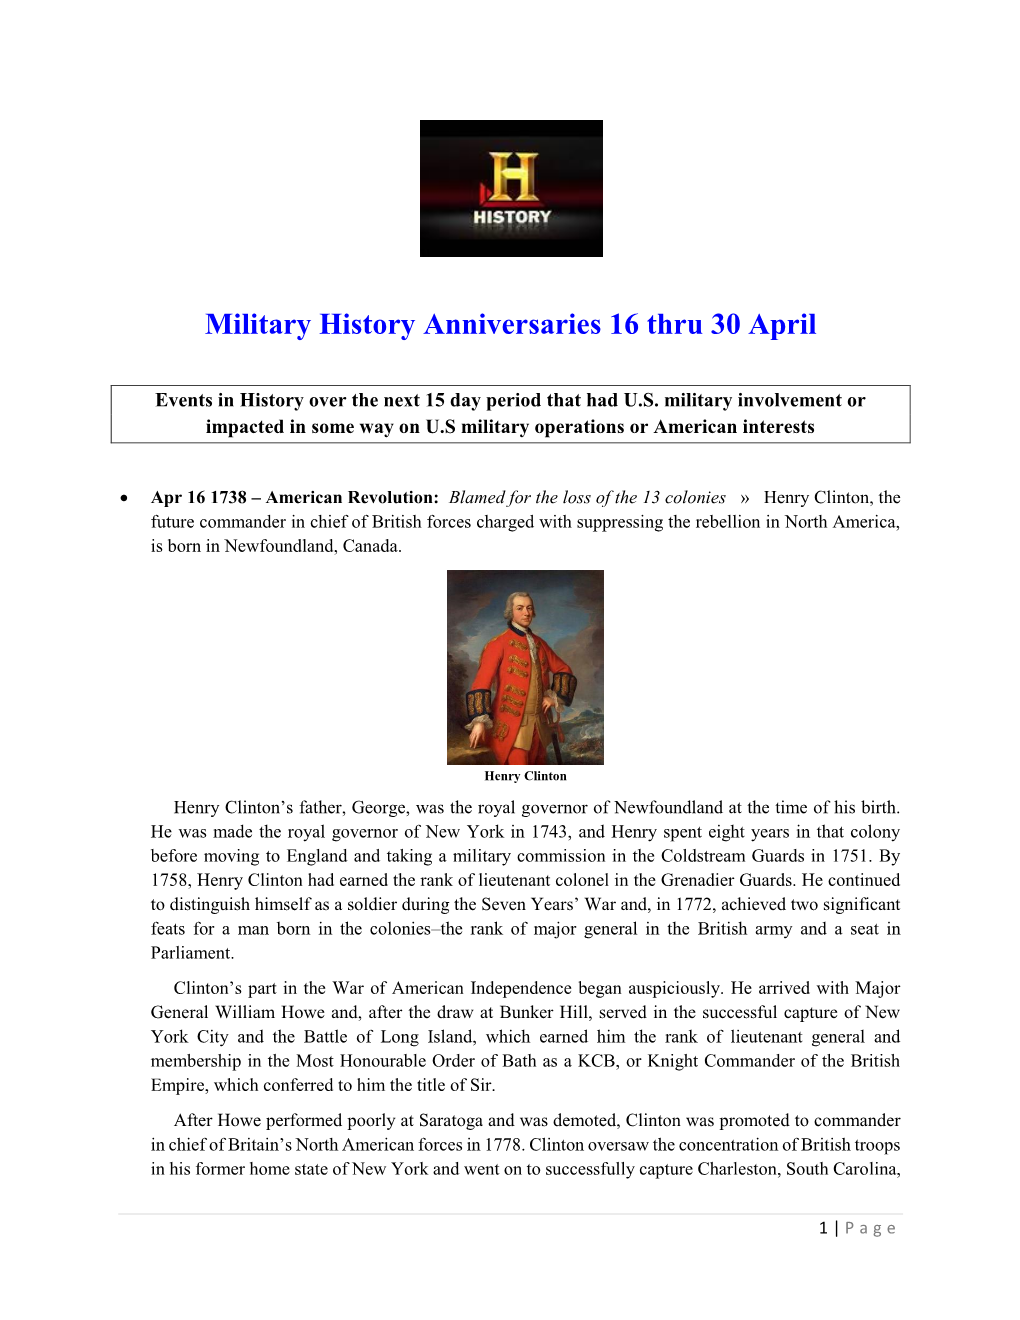 Military History Anniversaries 0416 Thru 043019